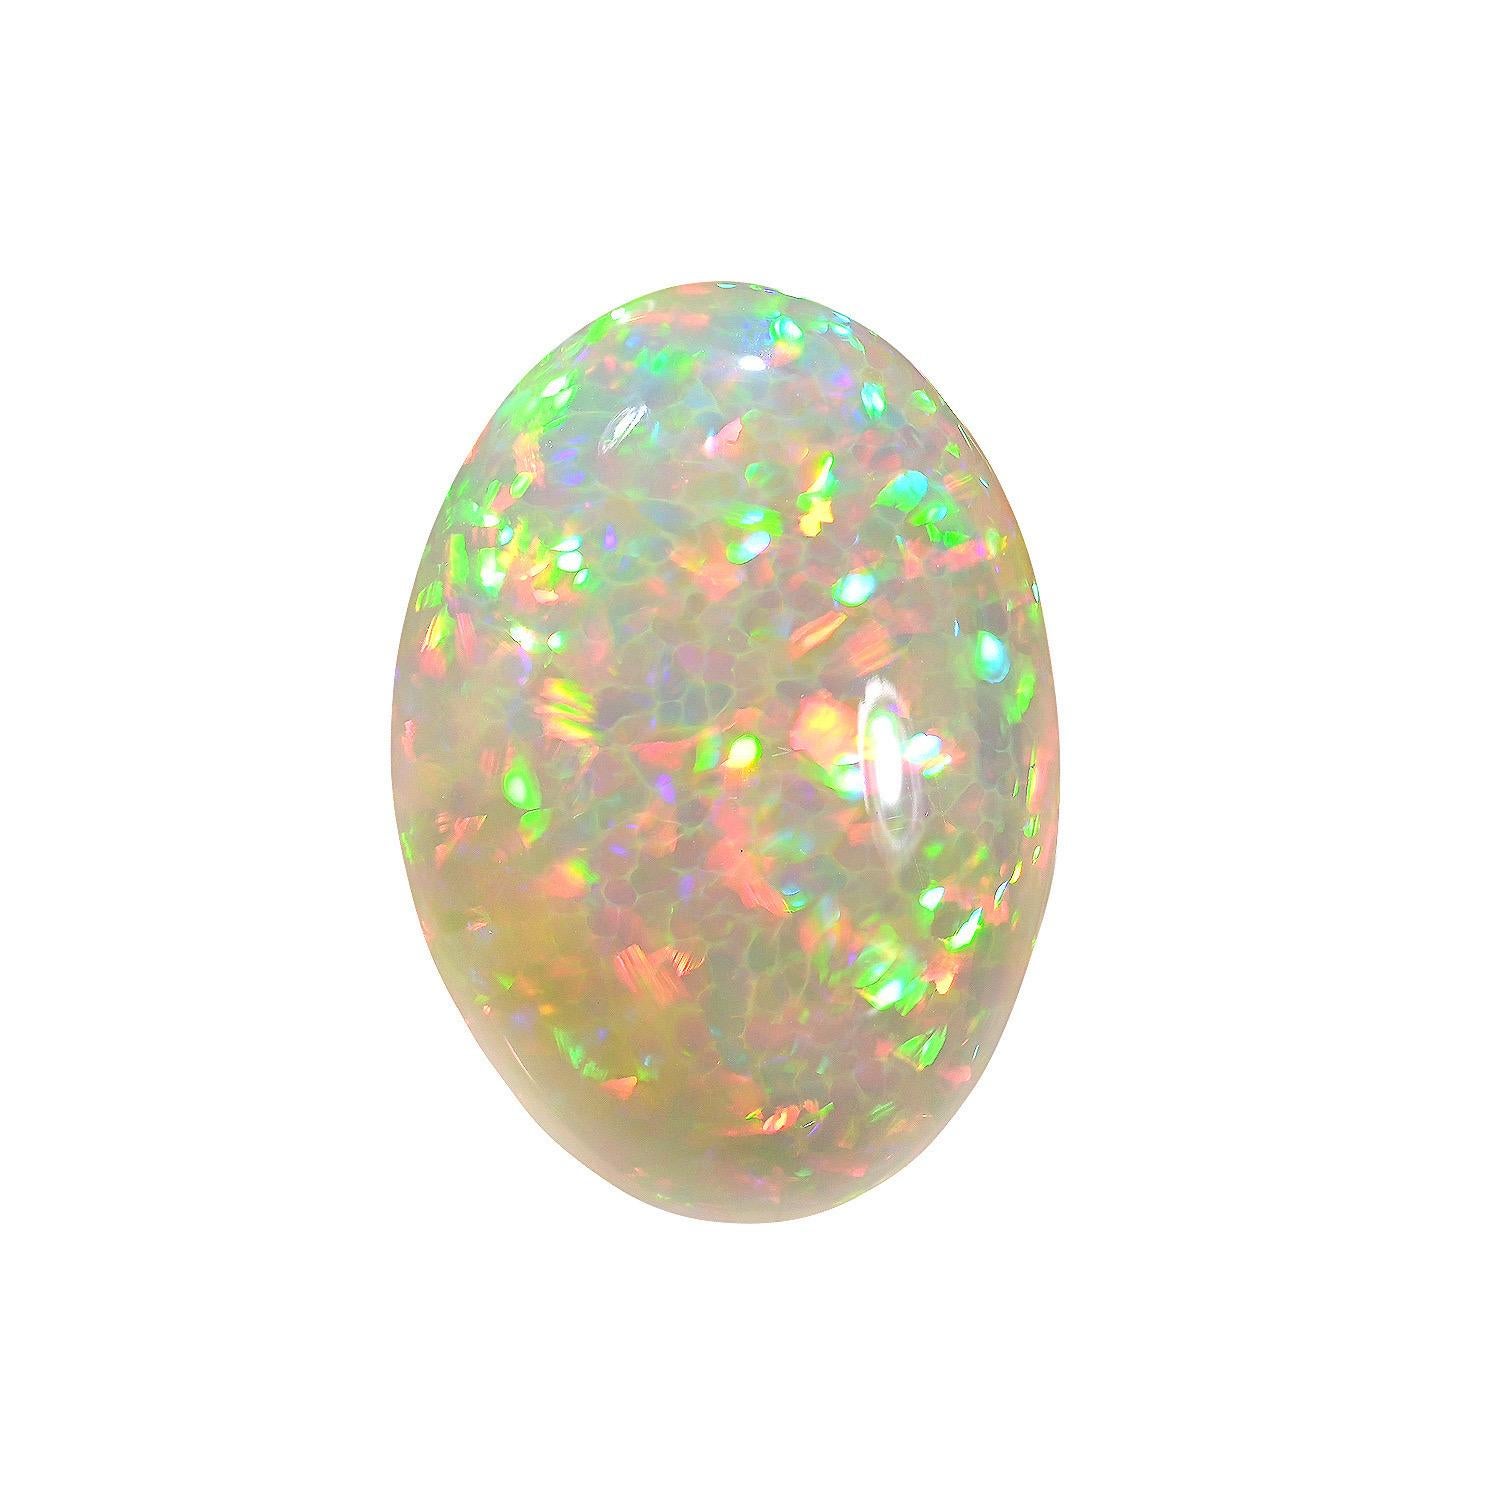 Opale d'Éthiopie naturelle ovale de 25,67 carats, offerte non montée à un collectionneur de pierres précieuses.
Les retours sont acceptés et pris en charge dans les sept jours suivant la livraison.
Nous offrons d'excellents travaux de bijouterie sur